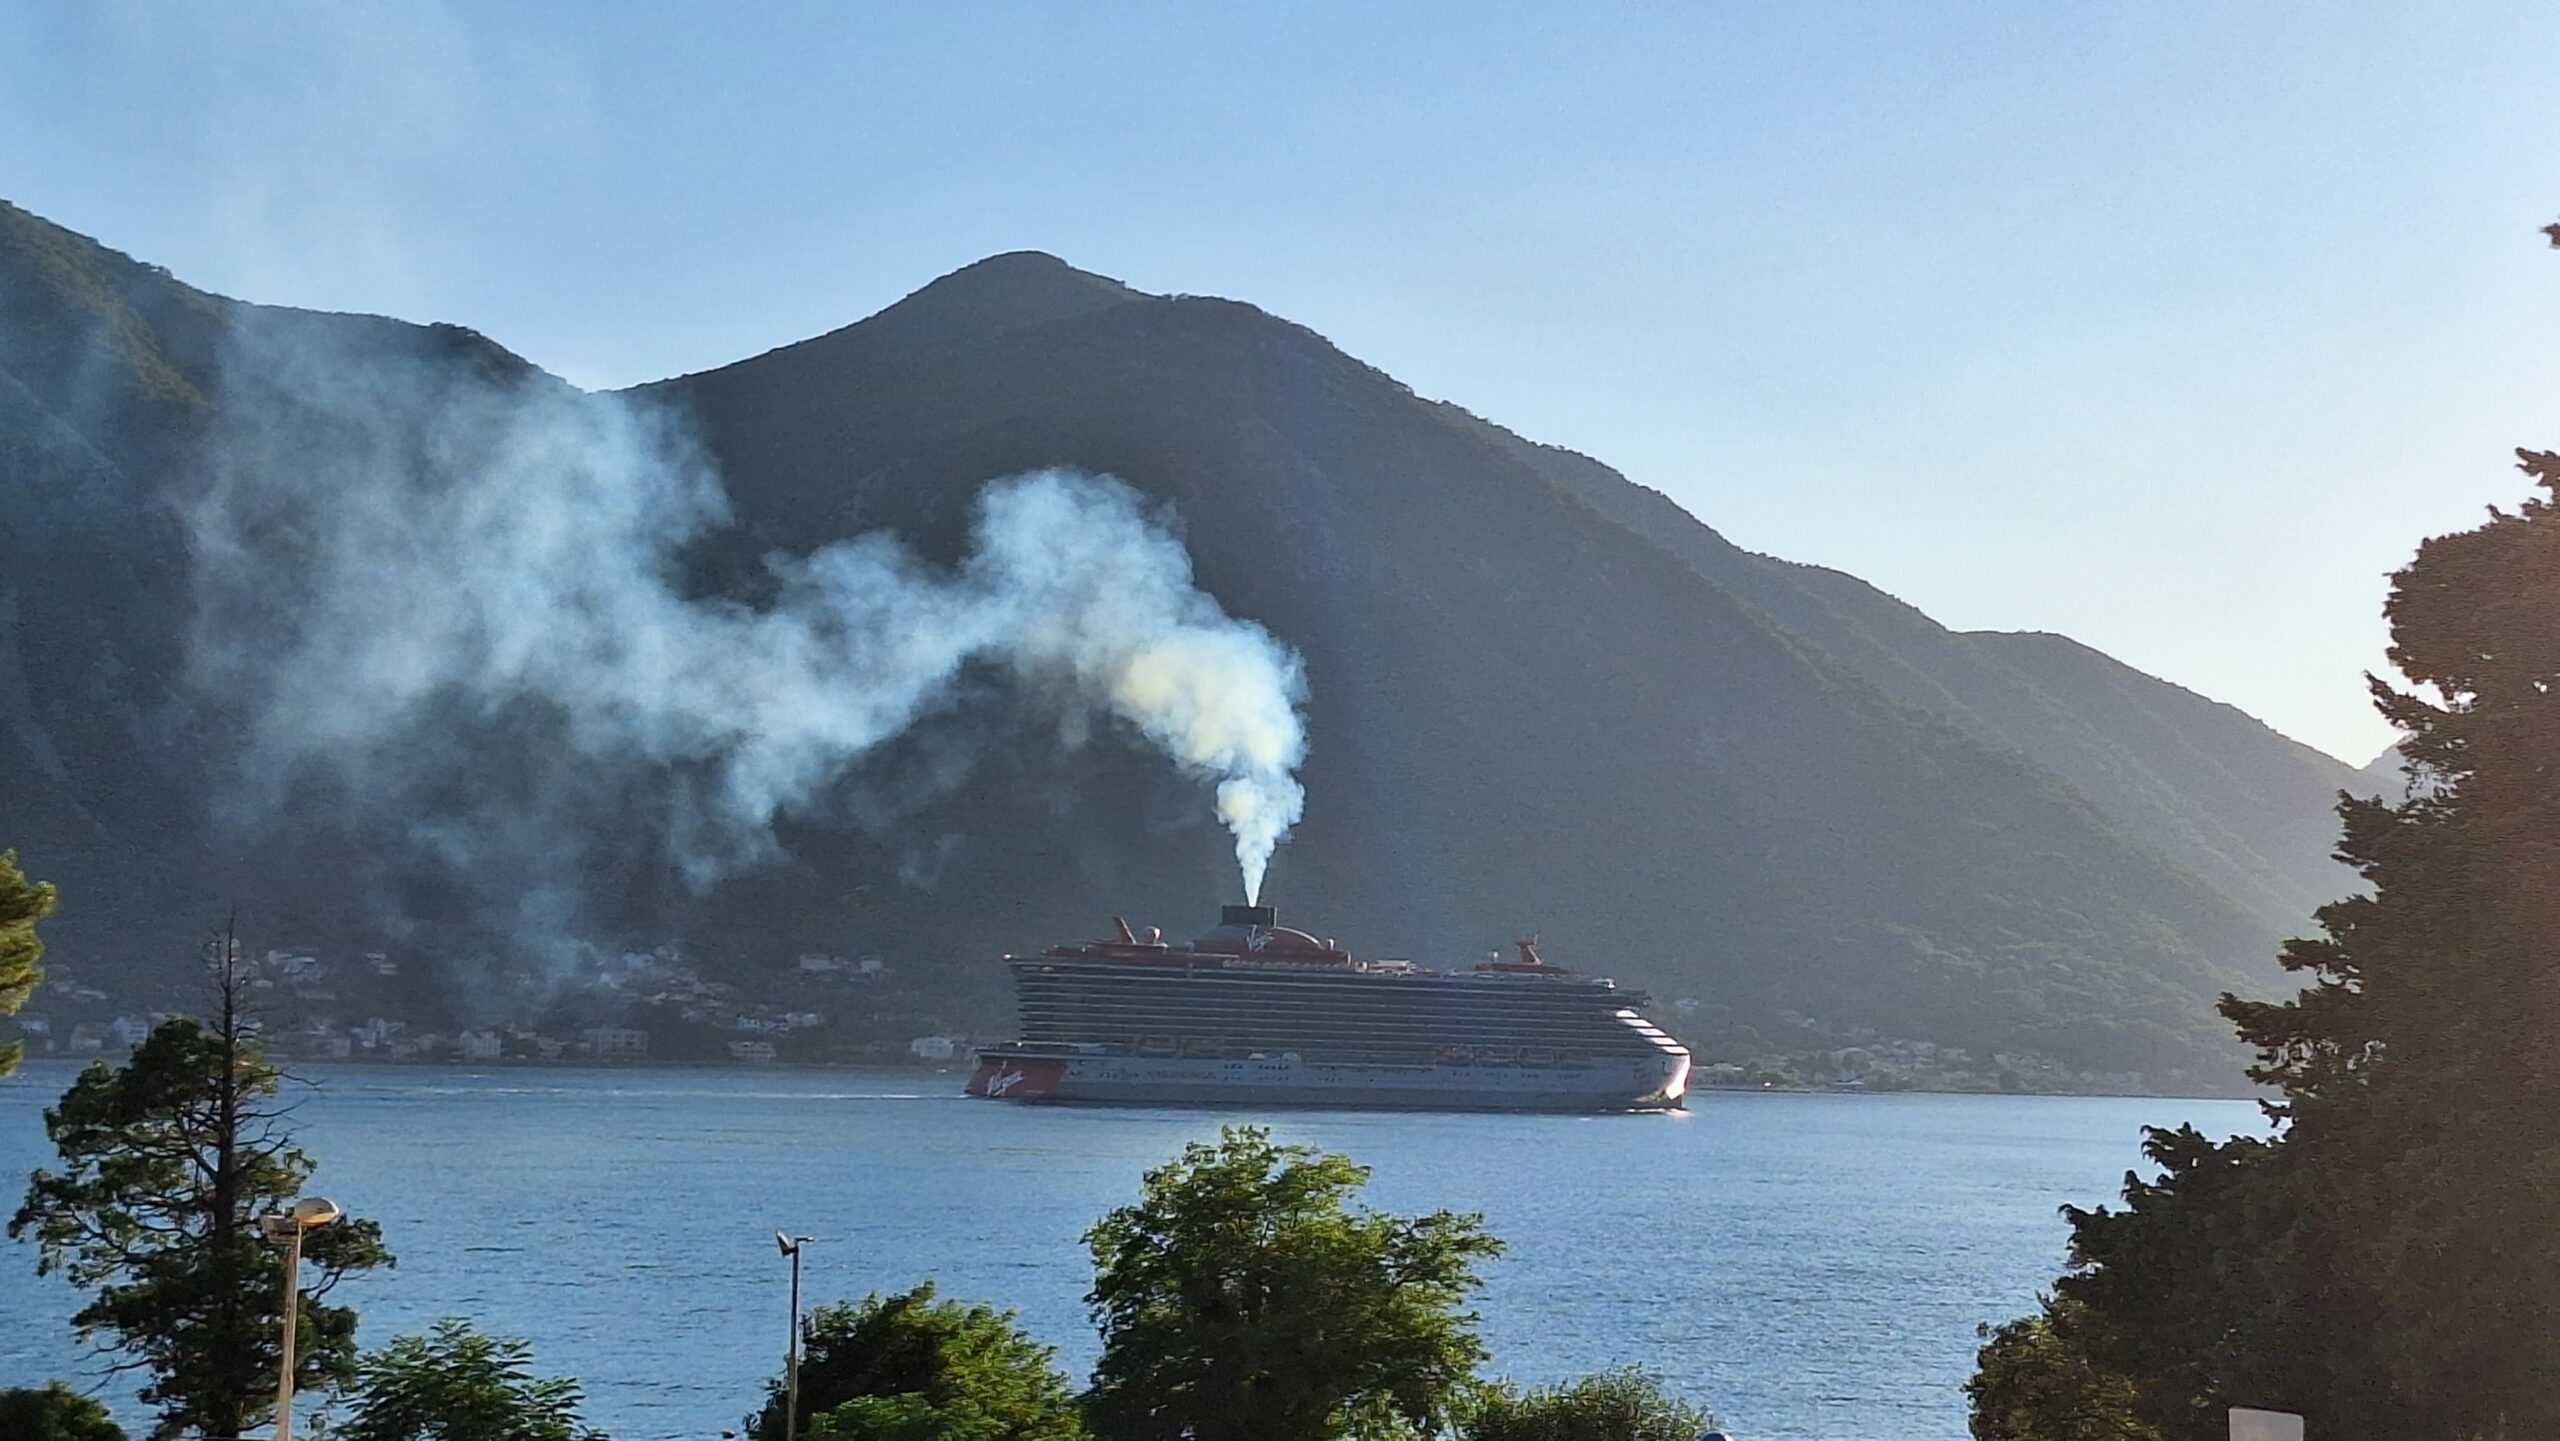 Primjena analitičkih modela za procjenu emisije zagađivača sa kruzer brodova u Bokokotorskom zalivu